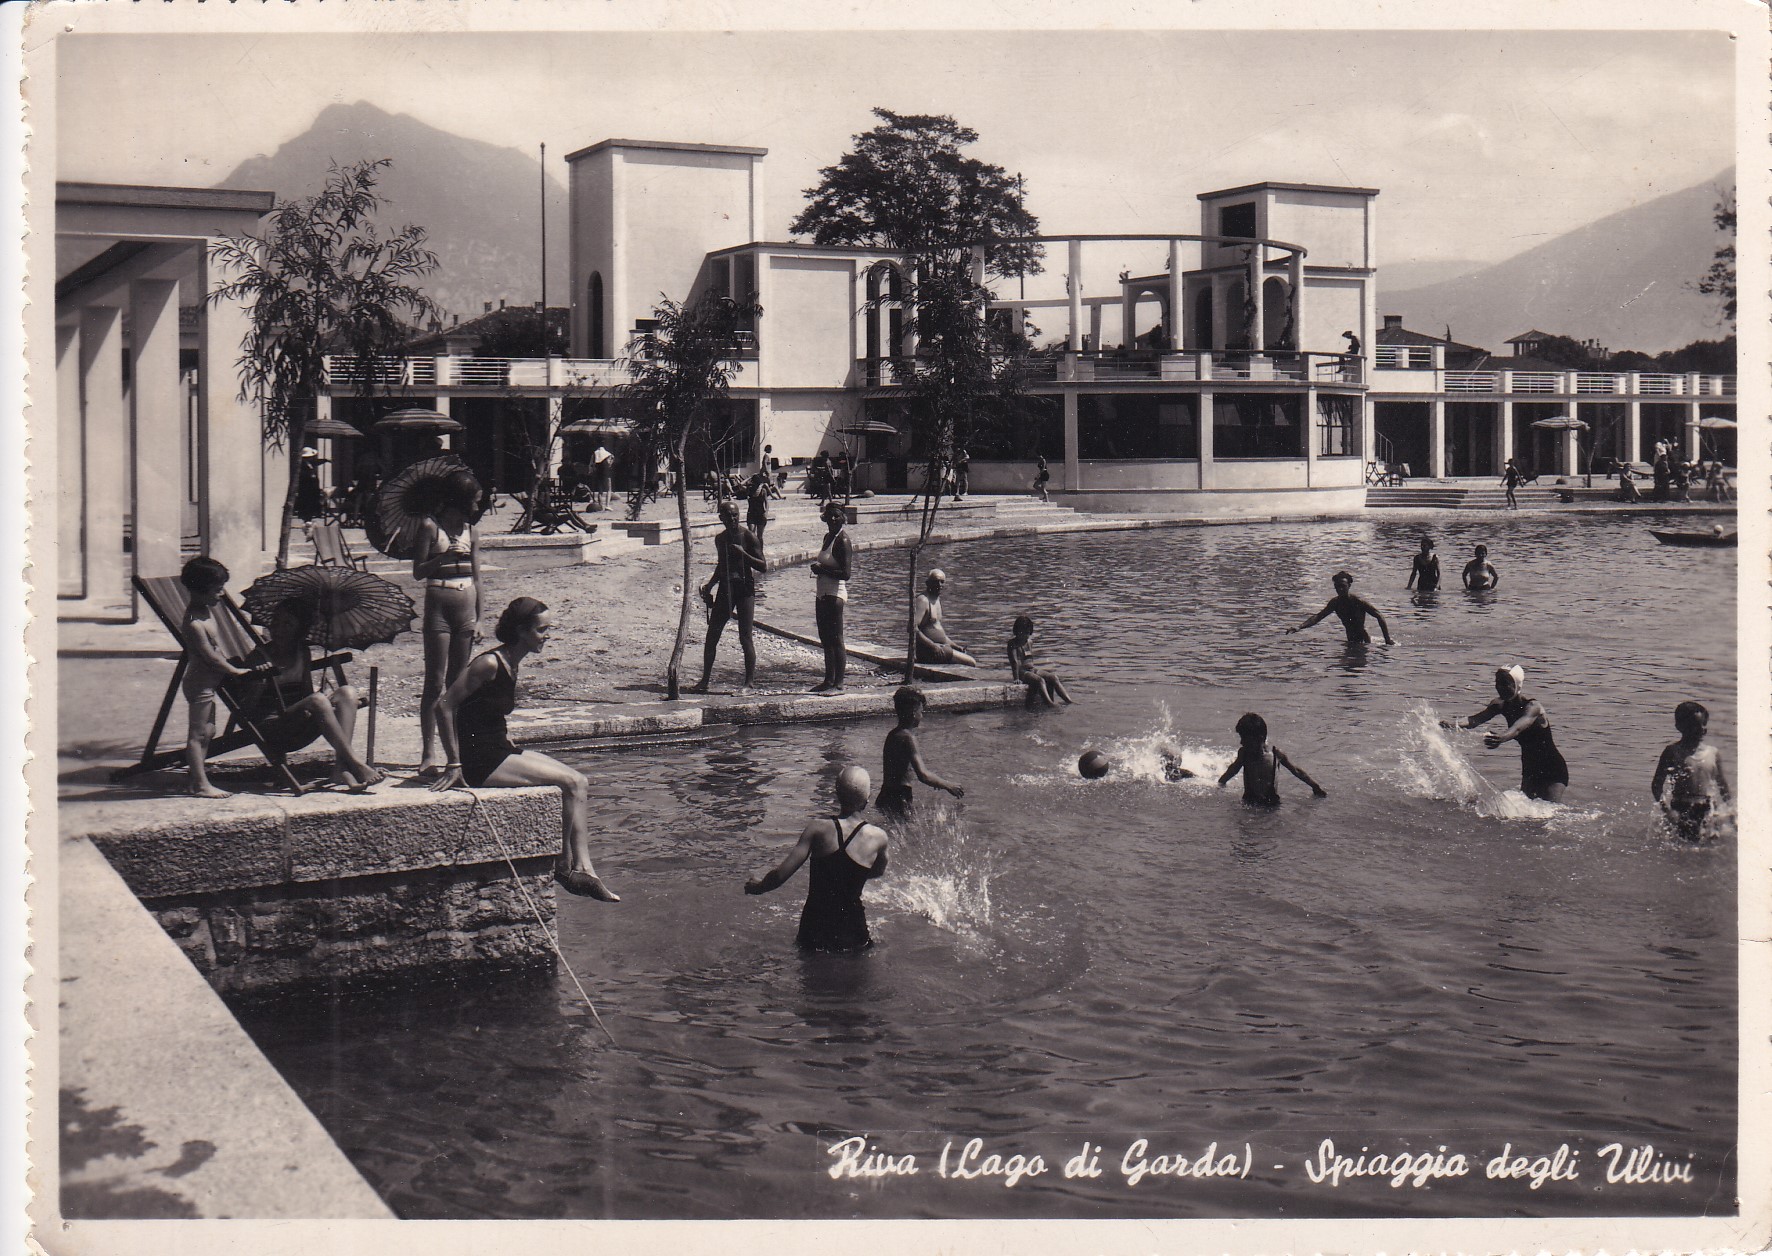 Cartolina RIVA (Lago di Garda) - Spiaggia degli Ulivi. 1950